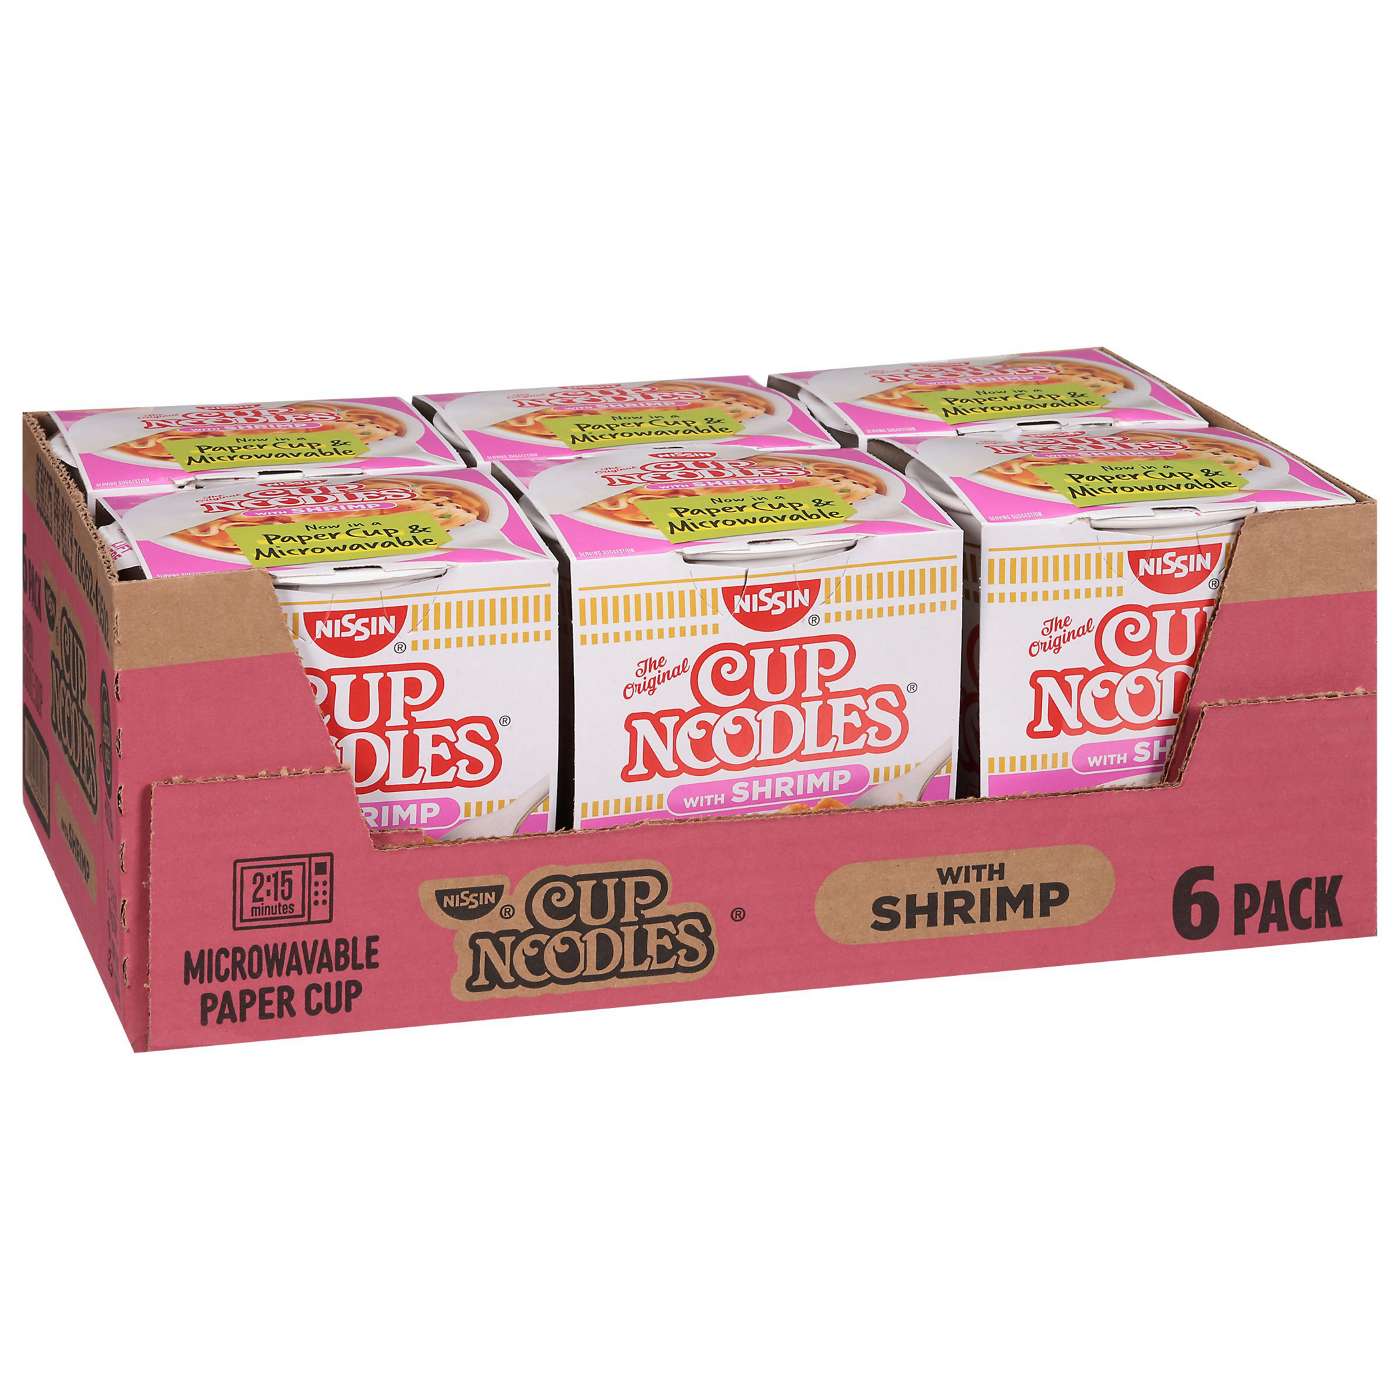 Nissin Shrimp Cup Noodles Value Pack; image 2 of 5